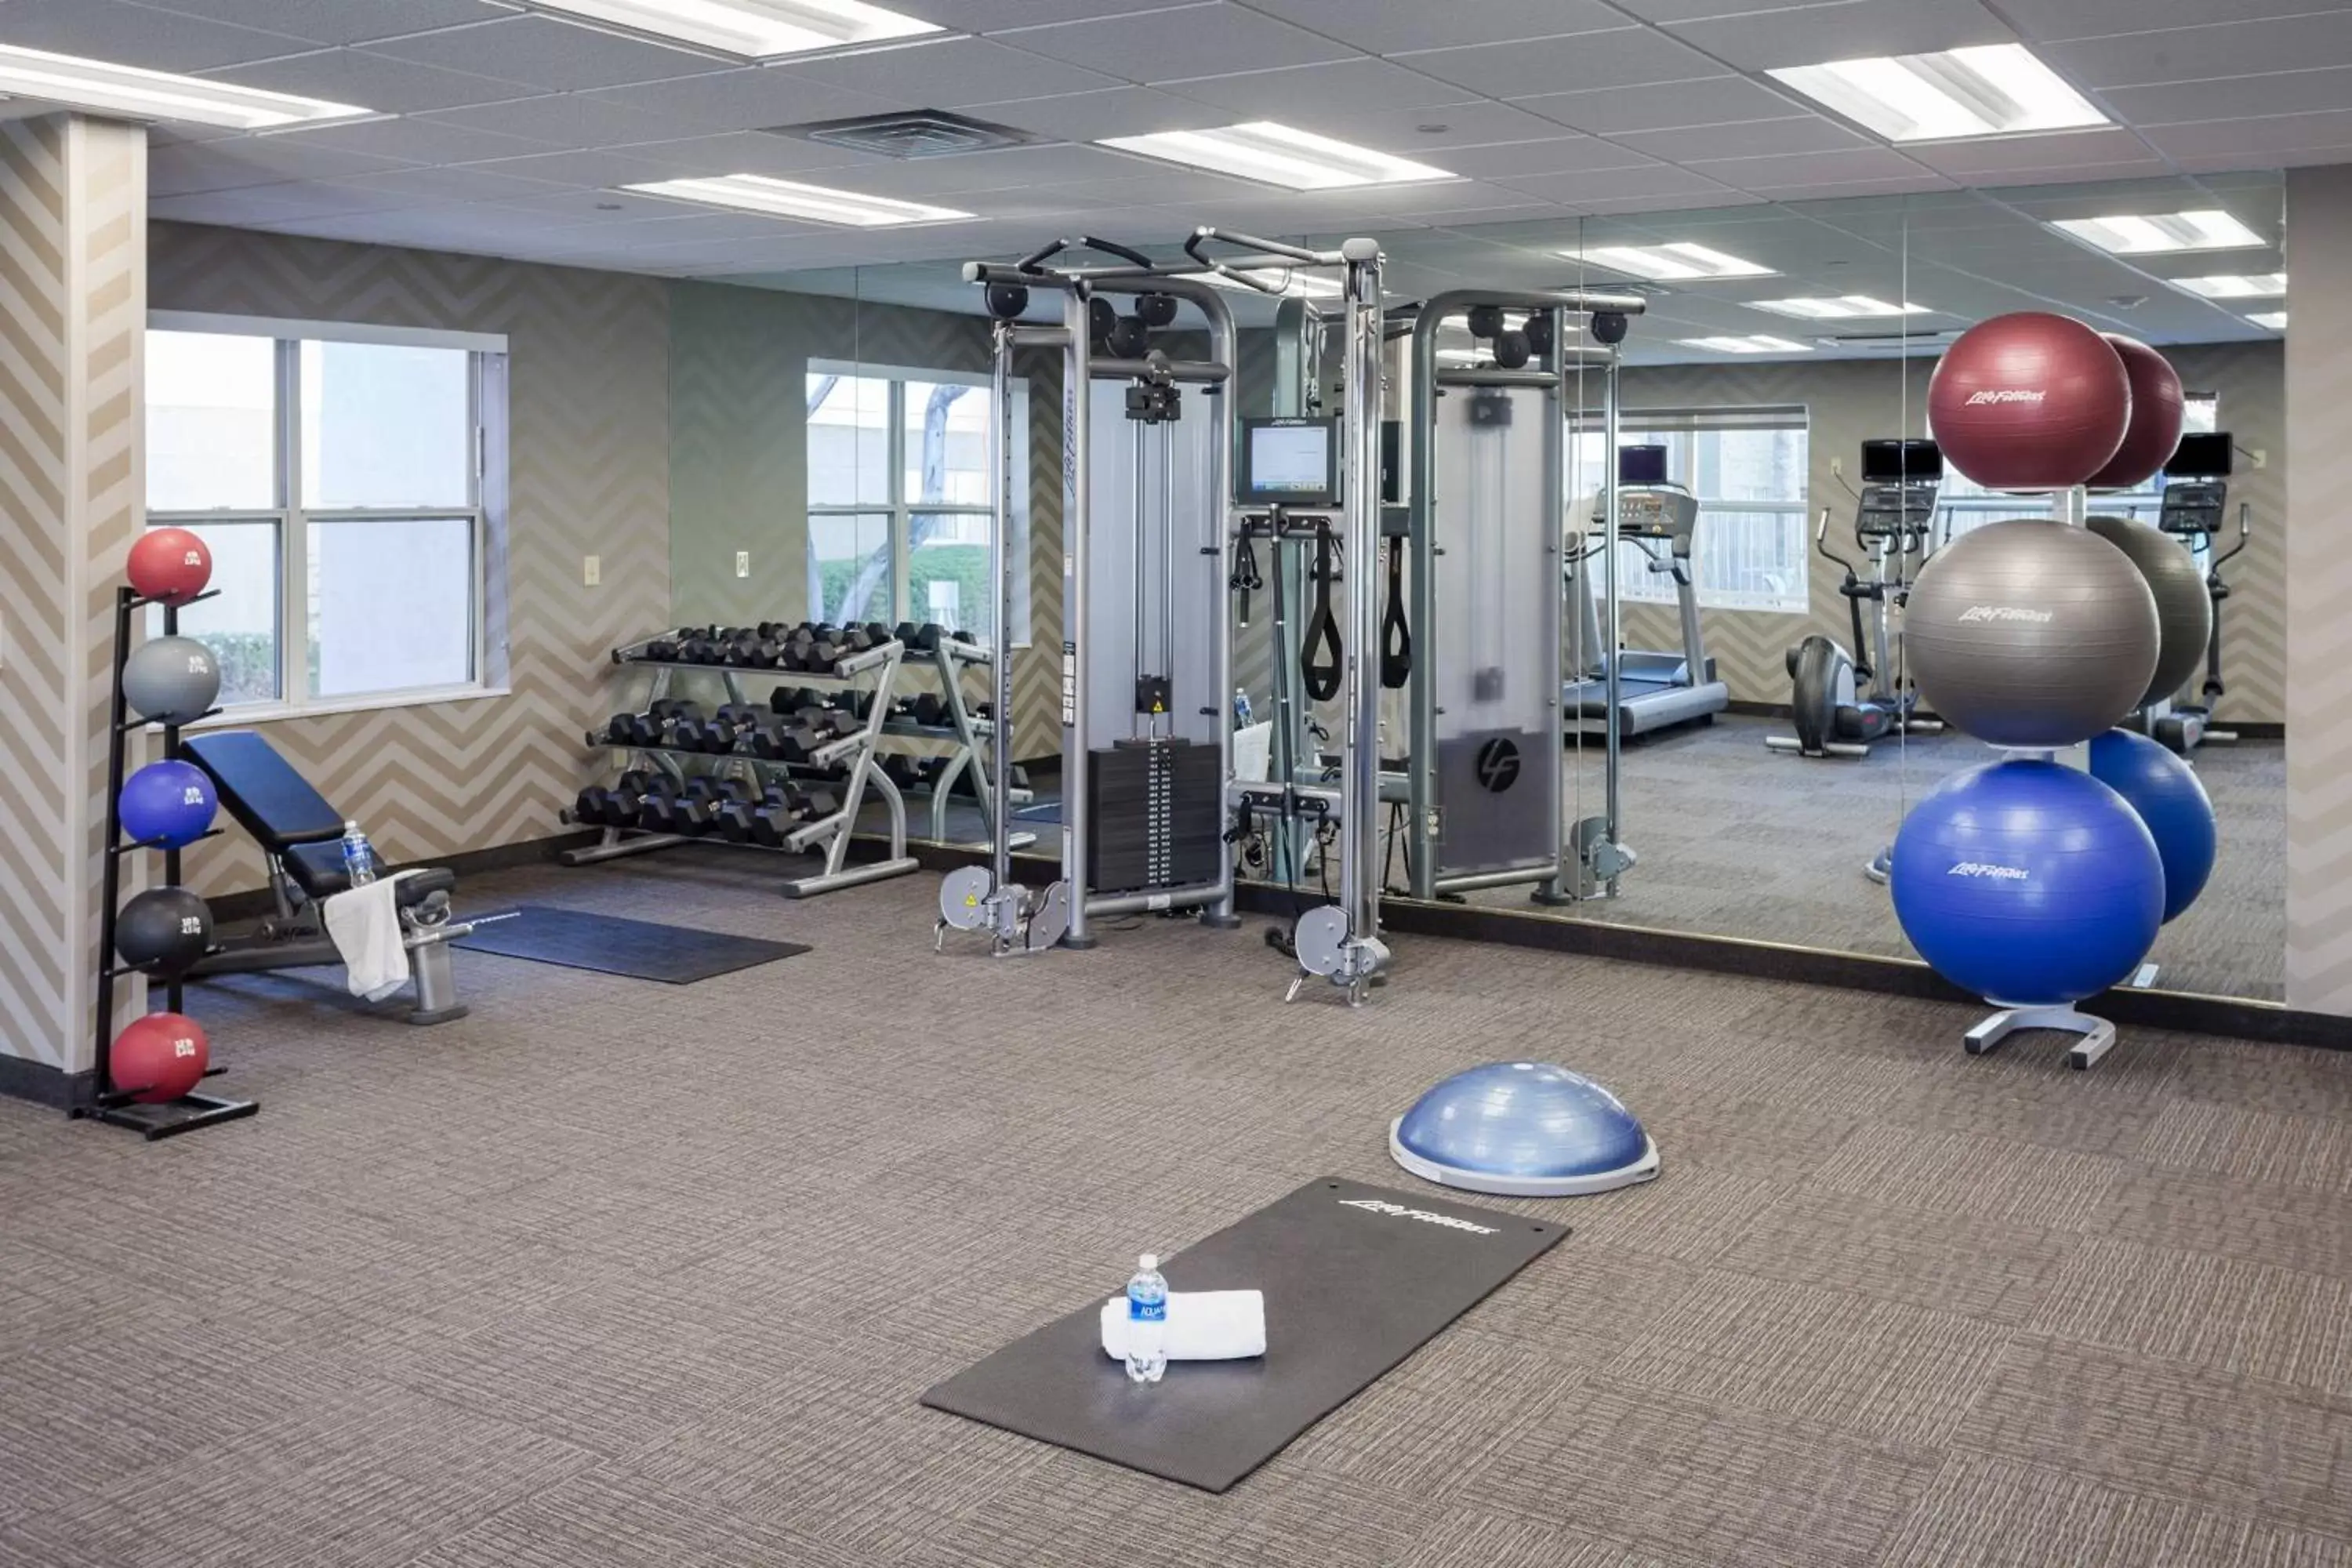 Fitness centre/facilities, Fitness Center/Facilities in Residence Inn by Marriott Las Vegas Henderson/Green Valley